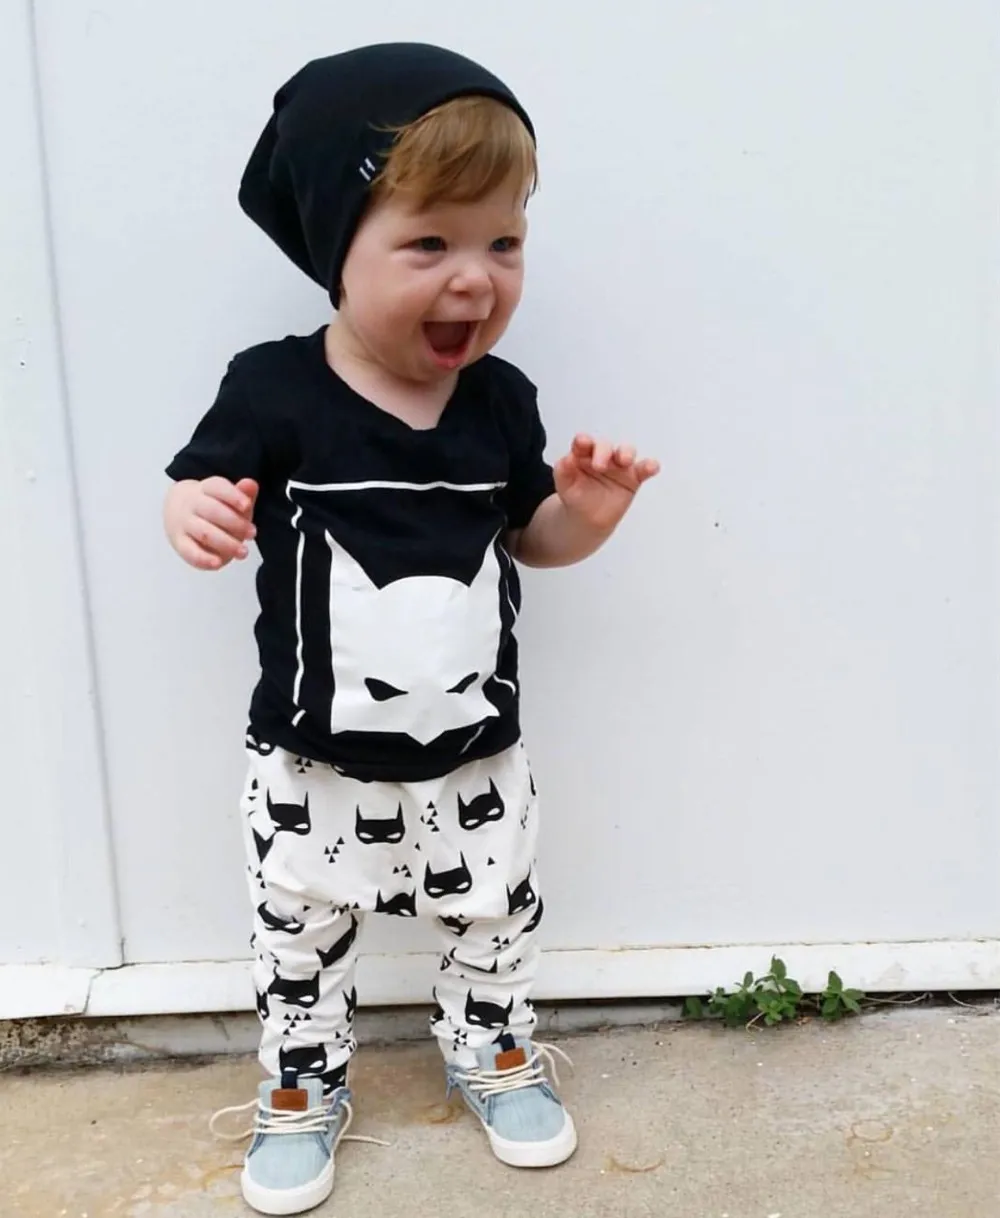 Nueva Moda Para Bebés Ropa Para Niños Ropa Infantil Unisex De Manga Corta Camiseta De Dibujos Animados + Pantalones 2 Unids Bebé Recién Nacido Ropa Niña De 1,88 € | DHgate